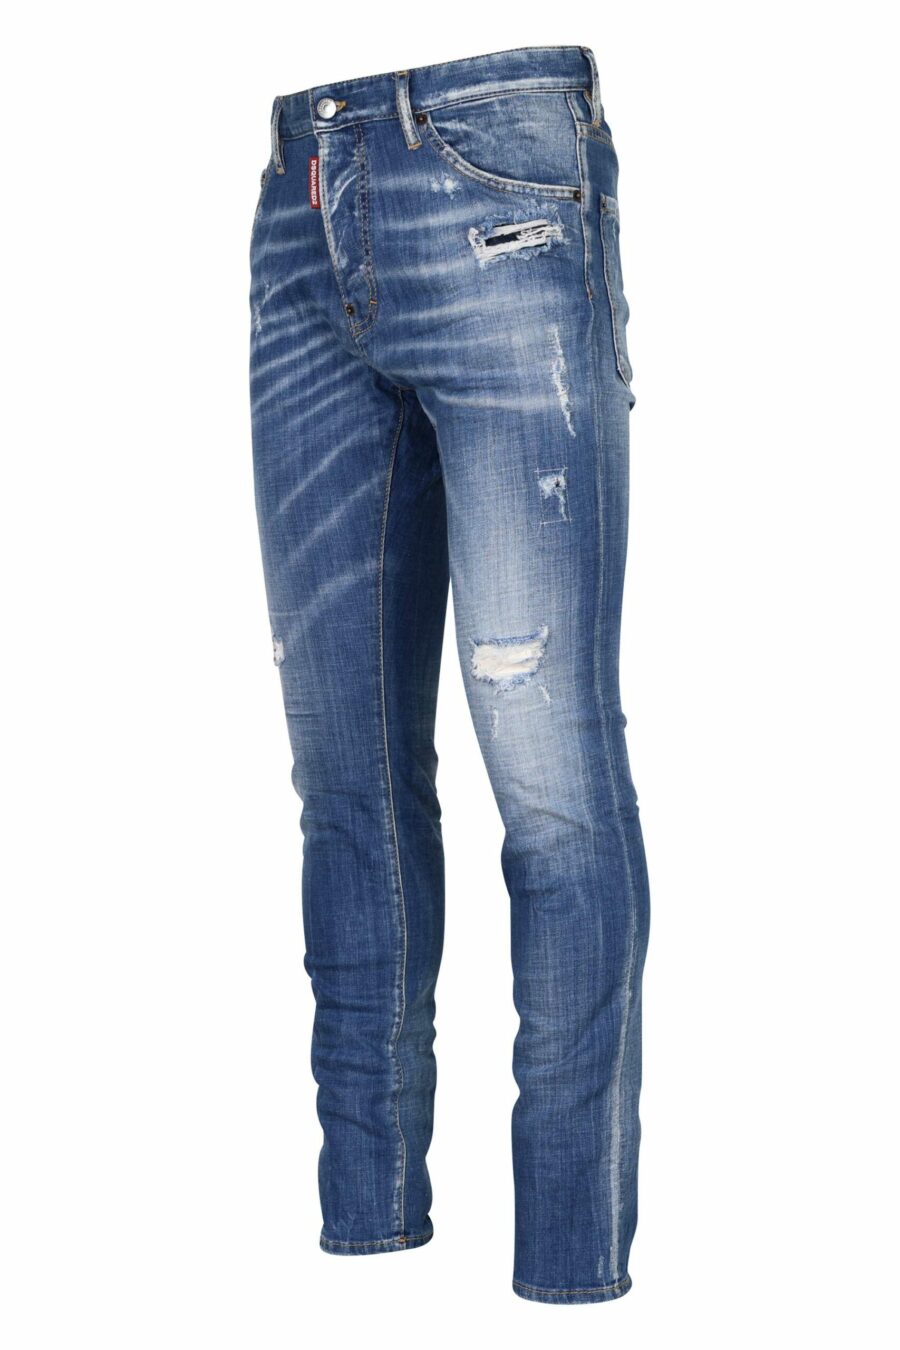 Hellblaue "cool guy jean"-Hose mit Halbschlitzen und halb zerschlissen - 8054148311414 1 skaliert